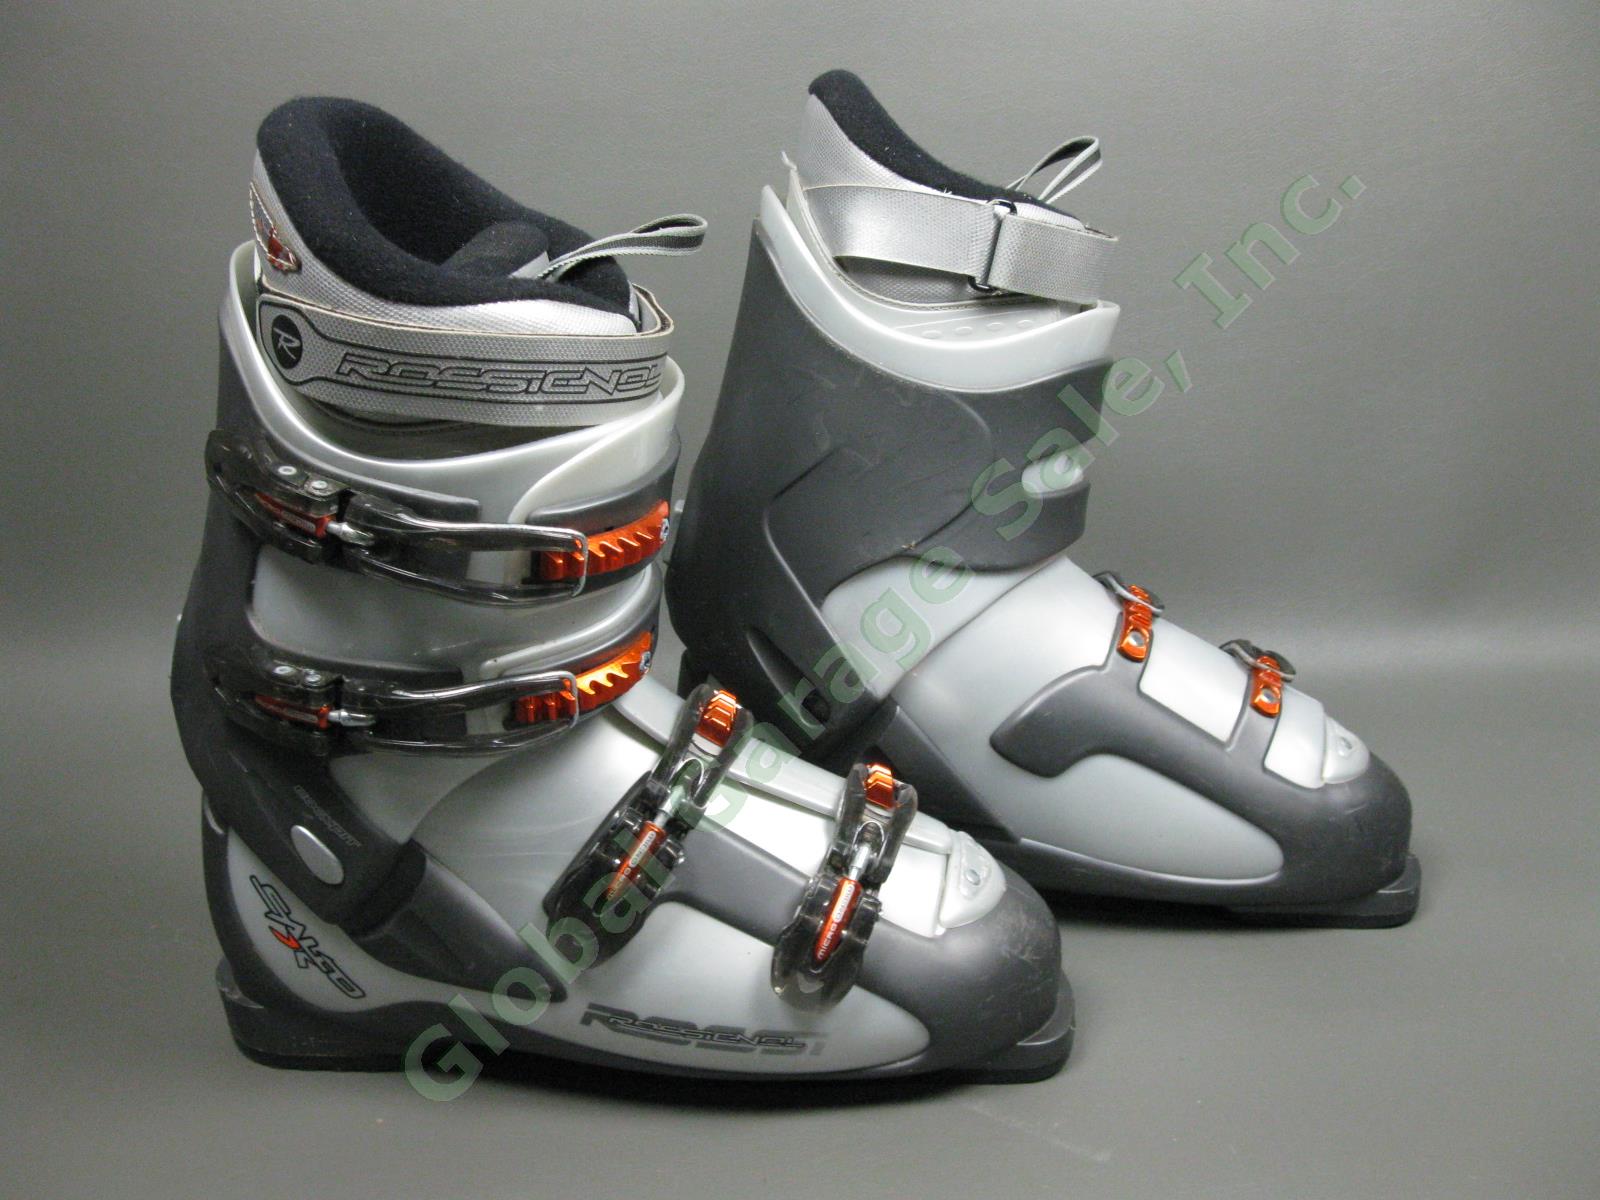 Rossignol Salto X Cockpit Orange/Silver Ski Boots Size 30.5 EUR/13 US/12 UK NR! 3